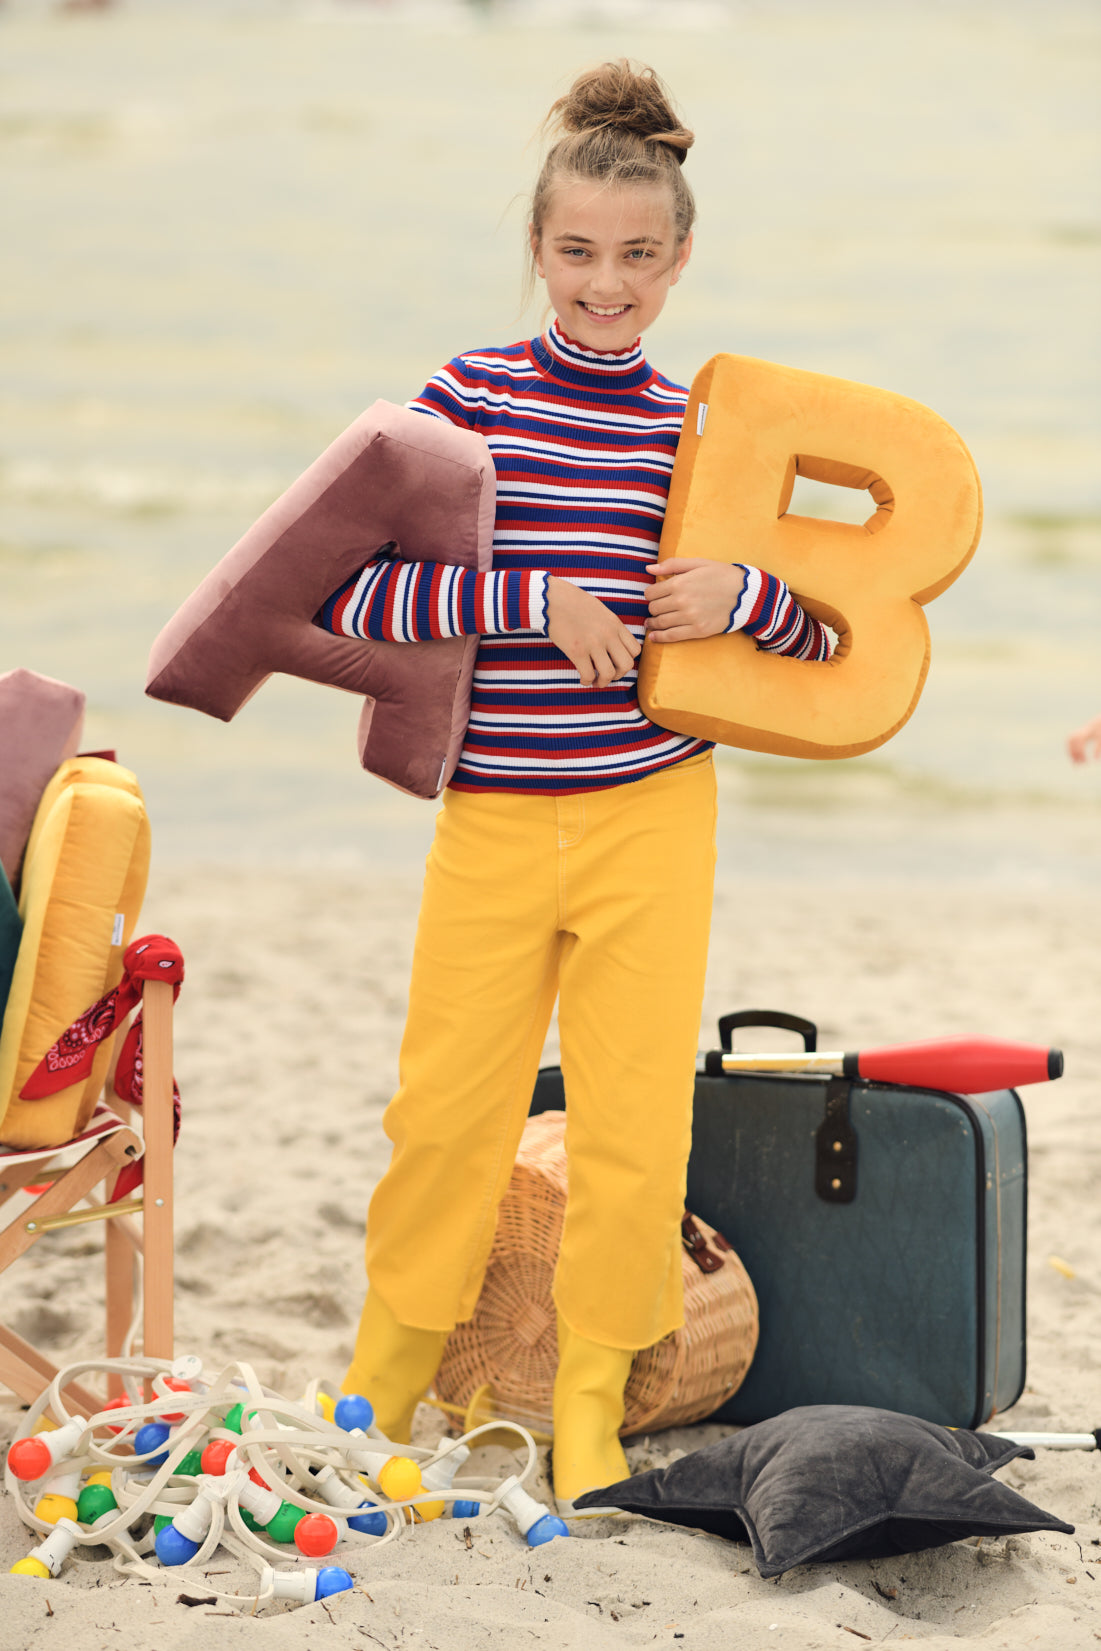 urocza dziewczynka na plaży trzymająca w rękach poduszki literki welurowe od Bettys Home